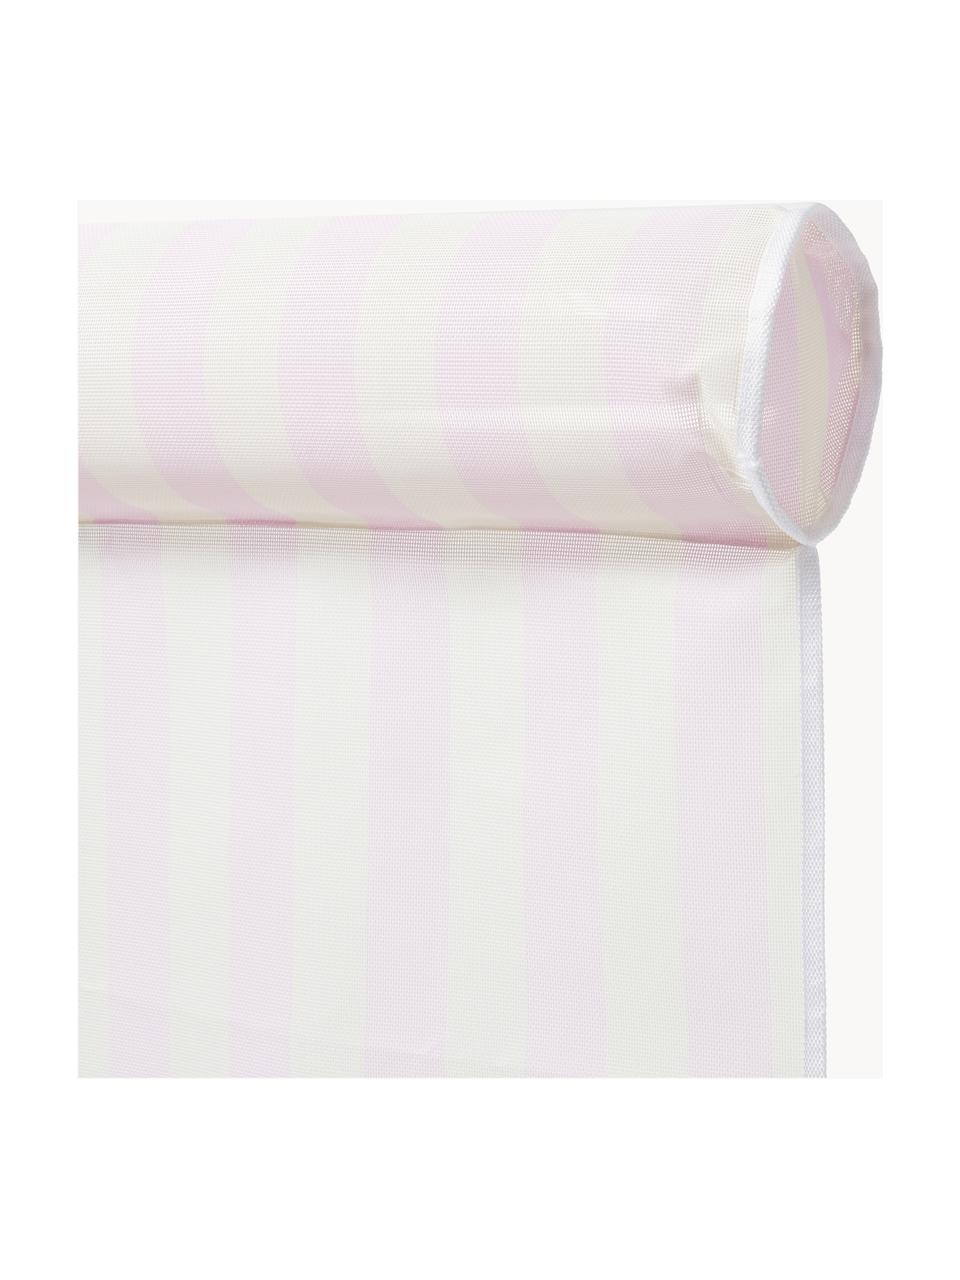 Mata do pływania Bubblegum, 60% tkanina, 40% tworzywo sztuczne, Jasny różowy, S 75 x D 112 cm